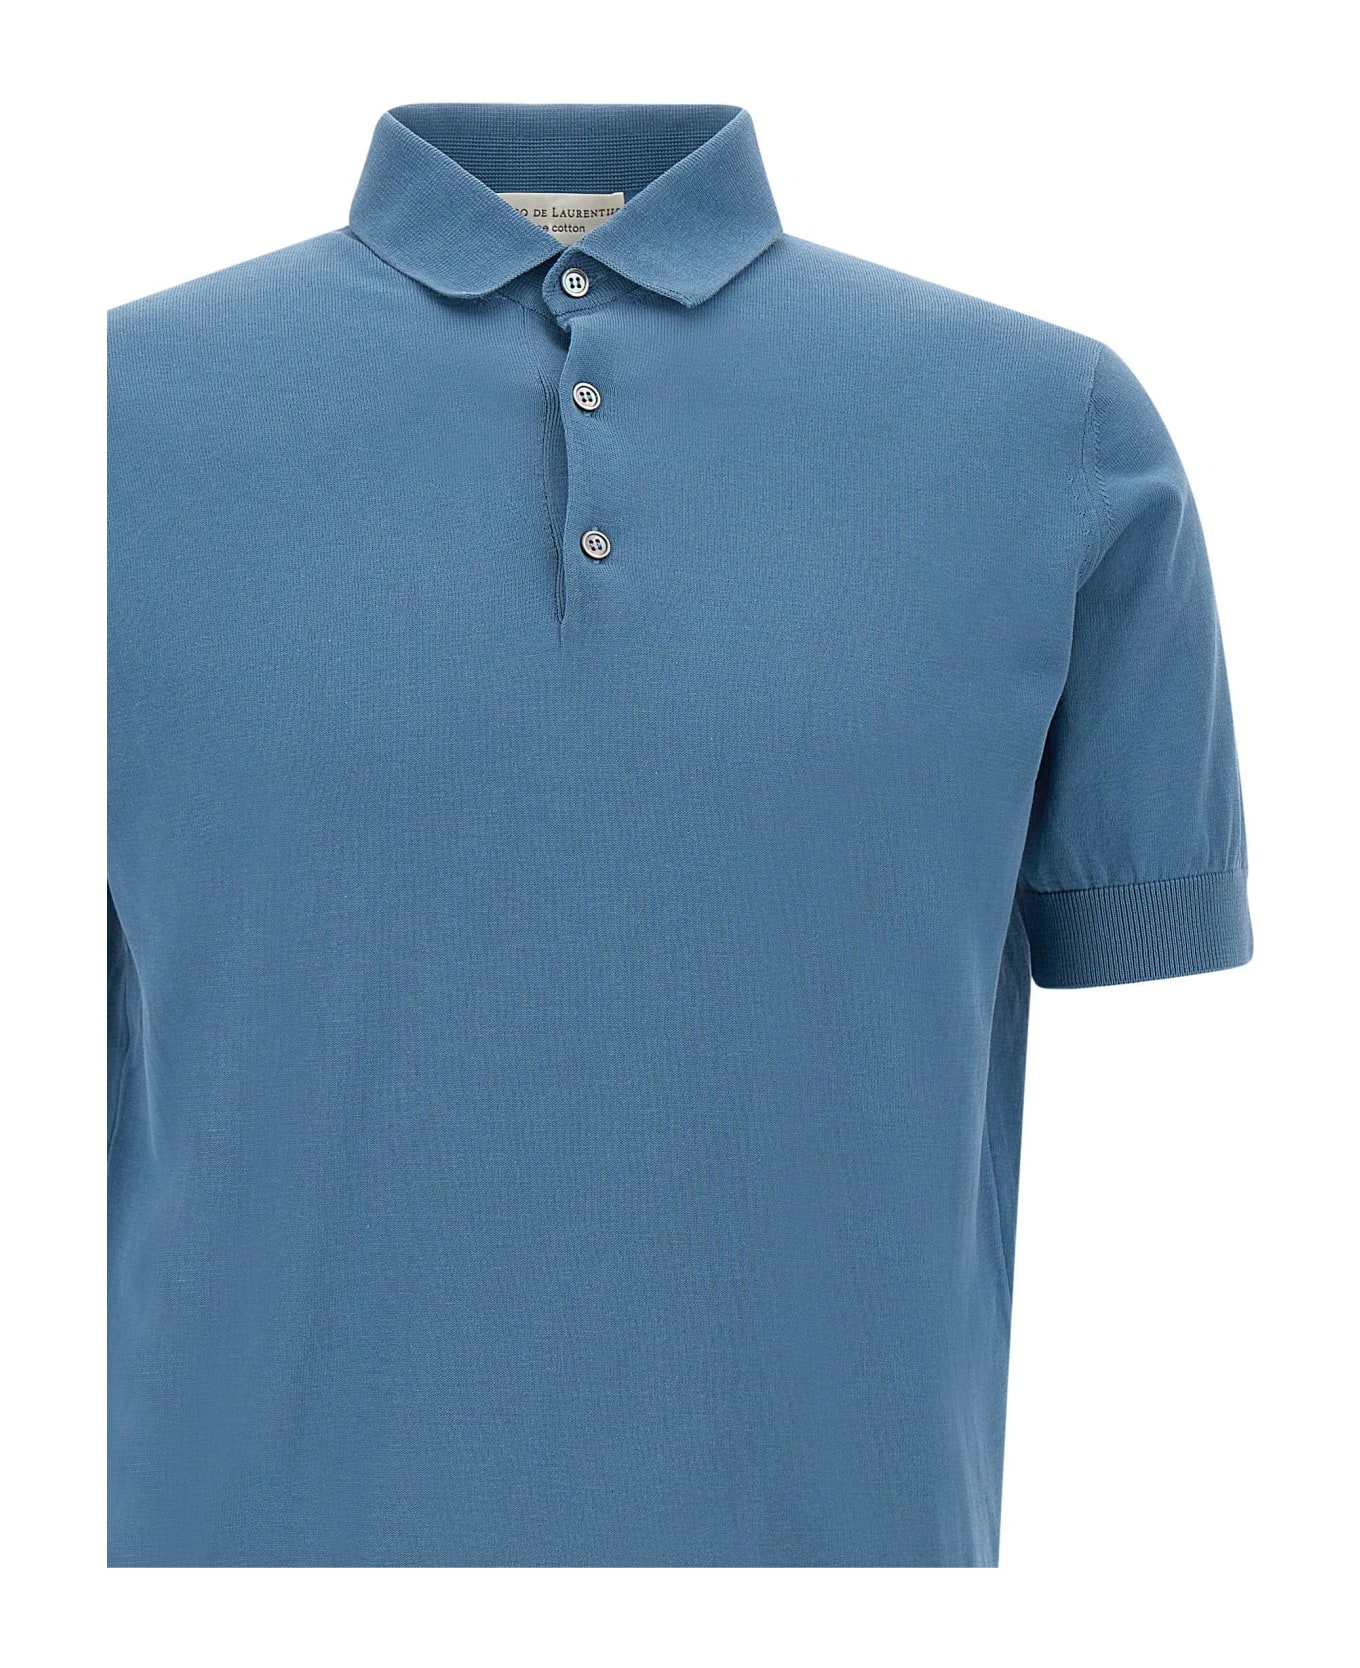 Filippo De Laurentiis Cotton Crepe Polo Shirt